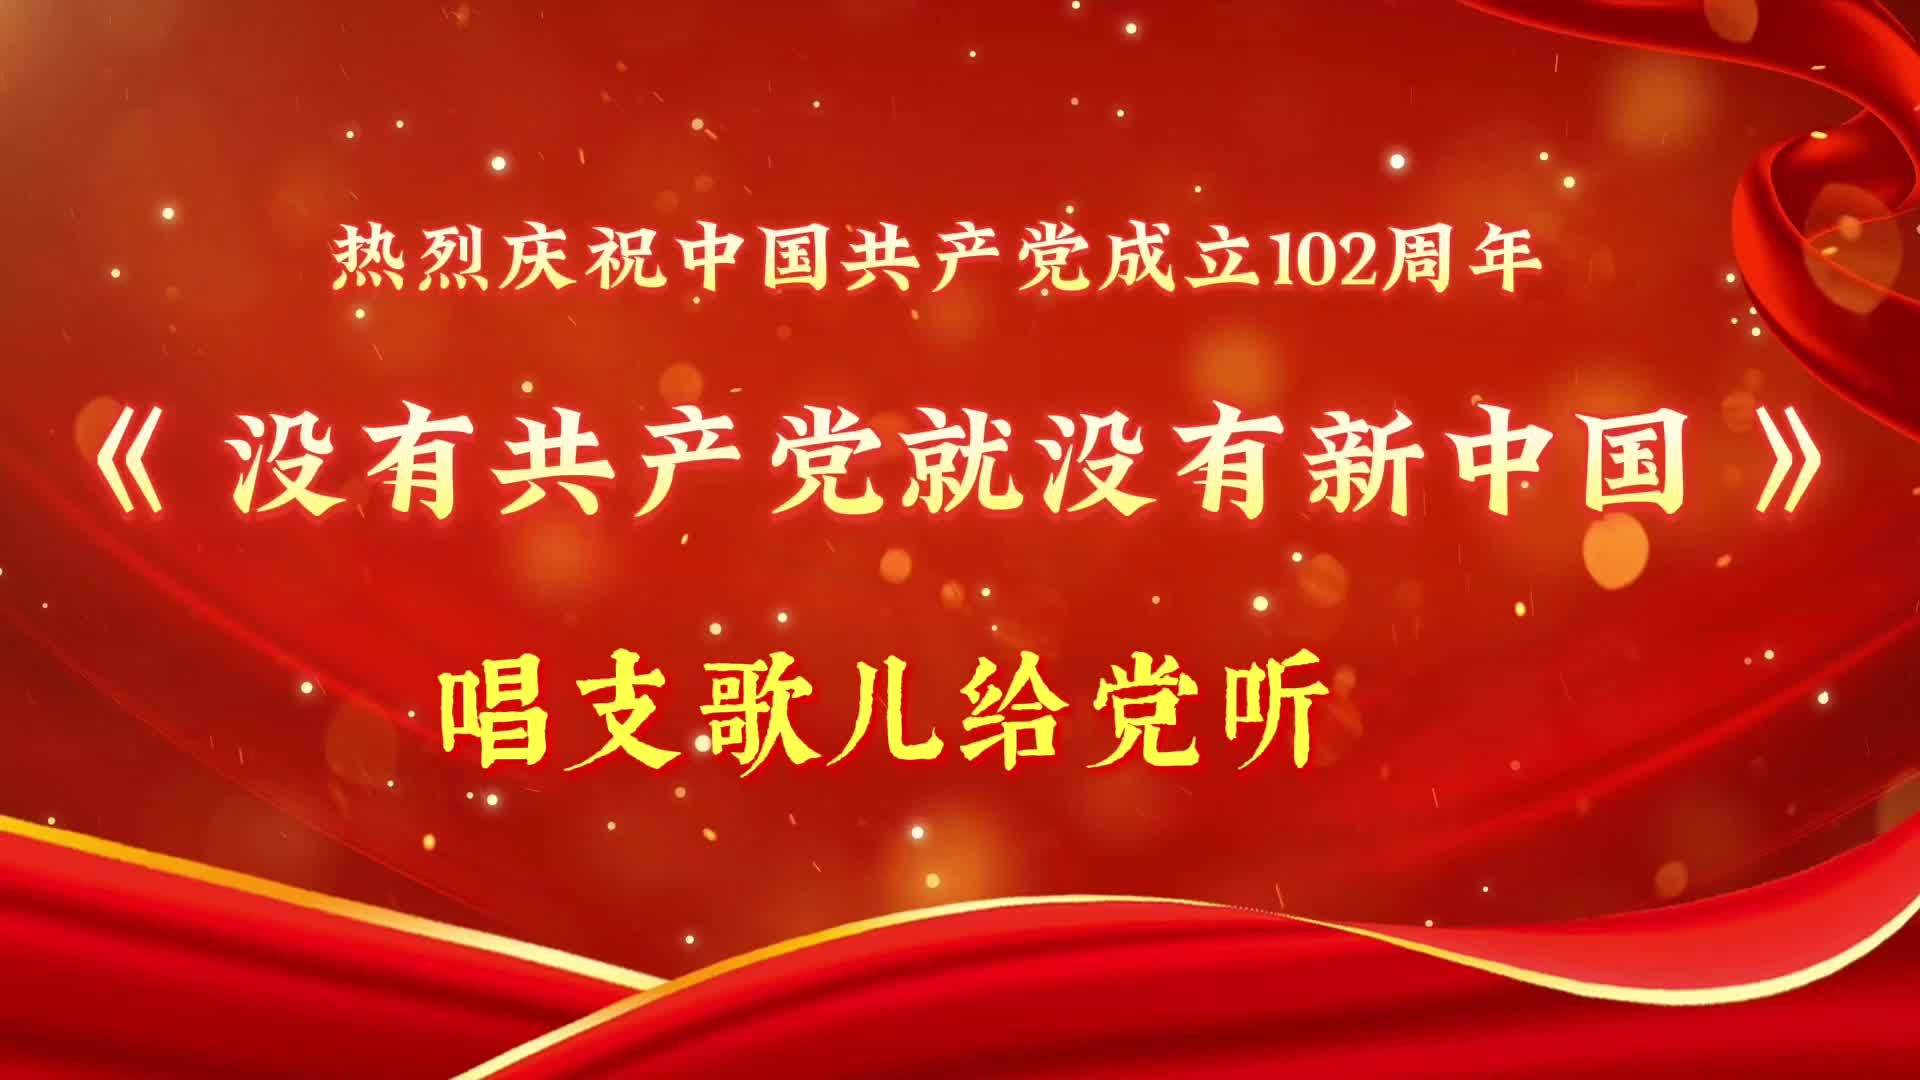 唱支歌儿给党听《没有共产党就没有新中国》——热烈庆祝中国共产党成立102周年